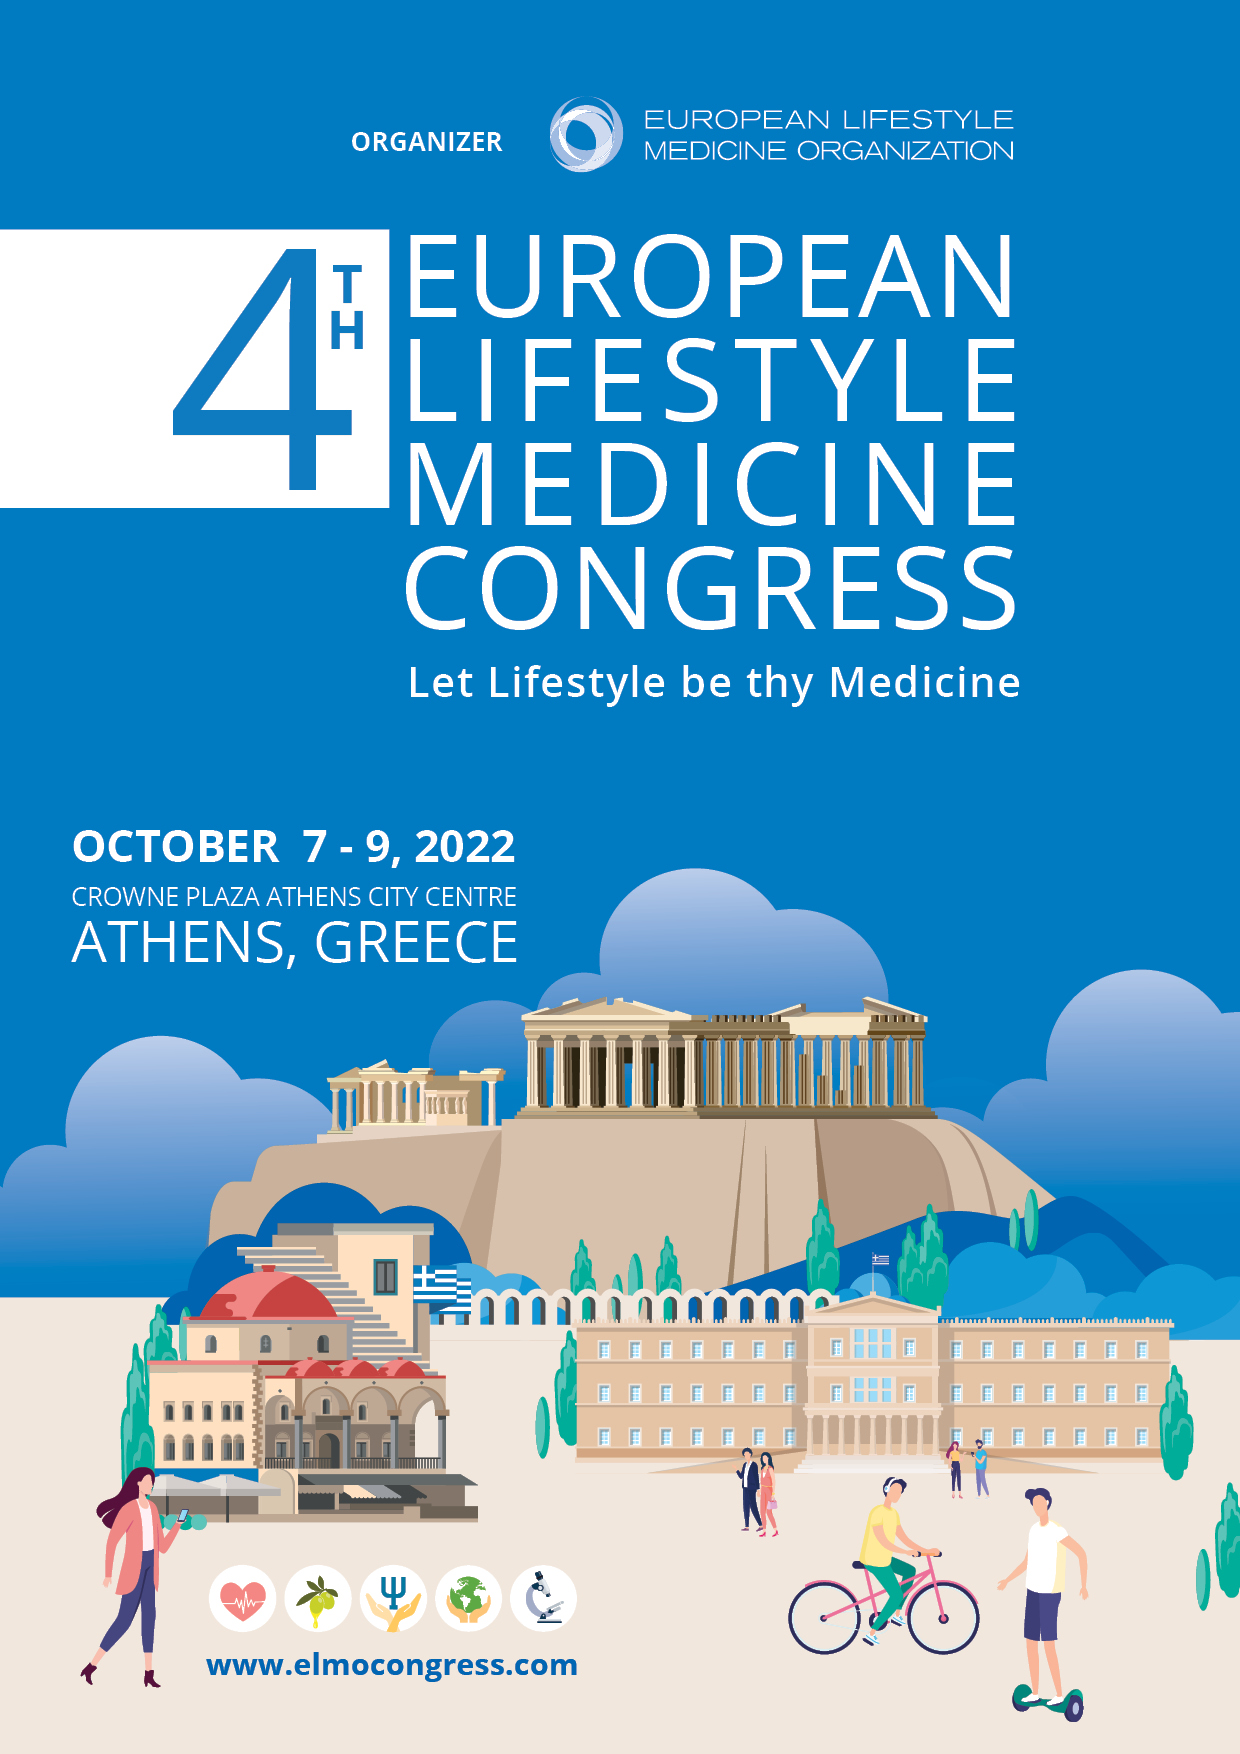 4th European Lifestyle Medicine Congress (Athens 7-9 October 2022)